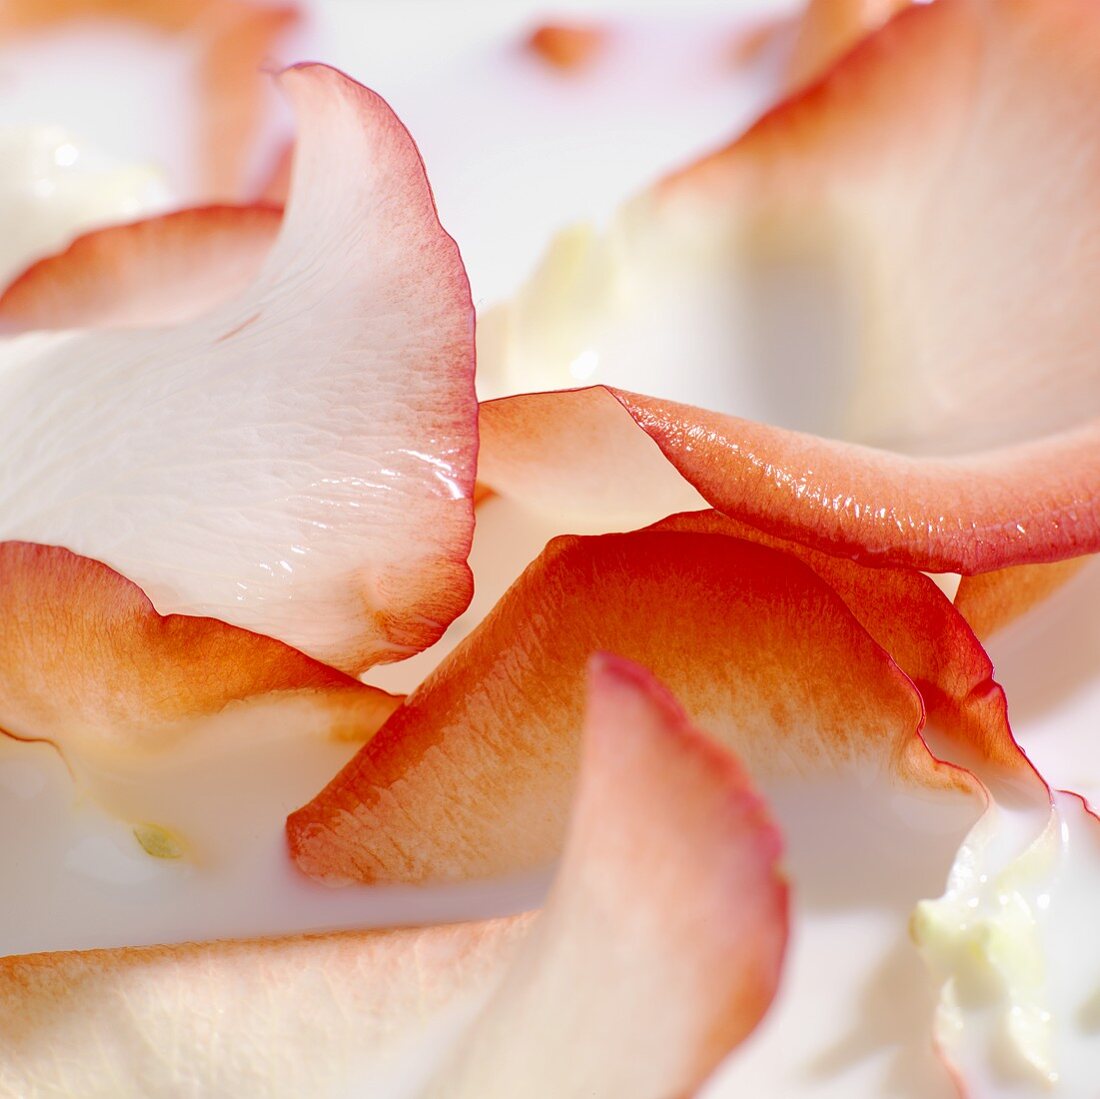 Rose petal milk bath (detail)